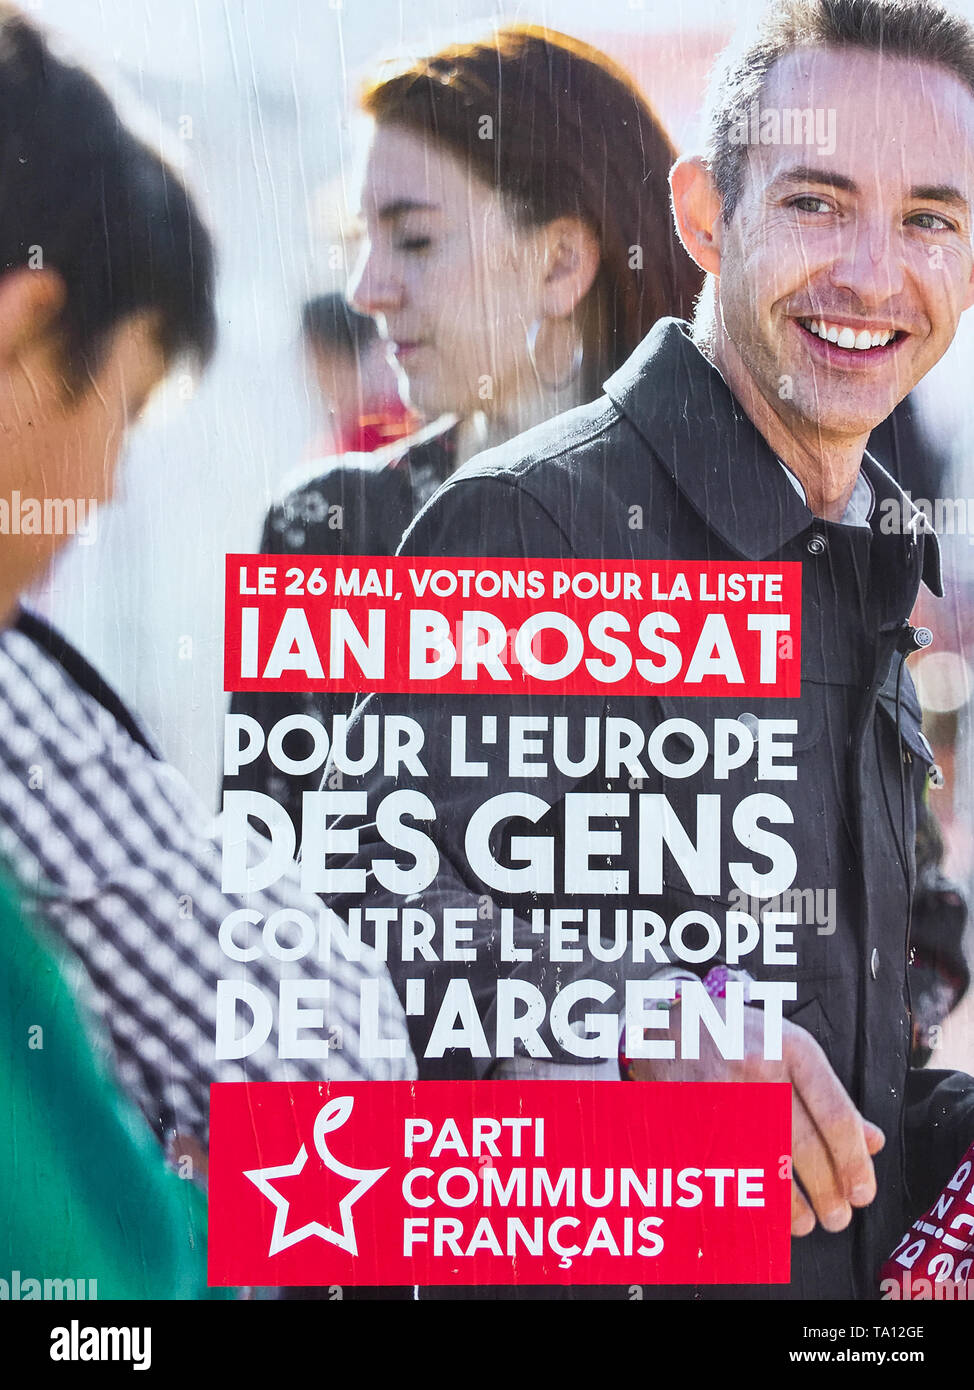 Élections européennes : Parti communiste français (PCF) de l'affiche politique, Lyon, France Banque D'Images